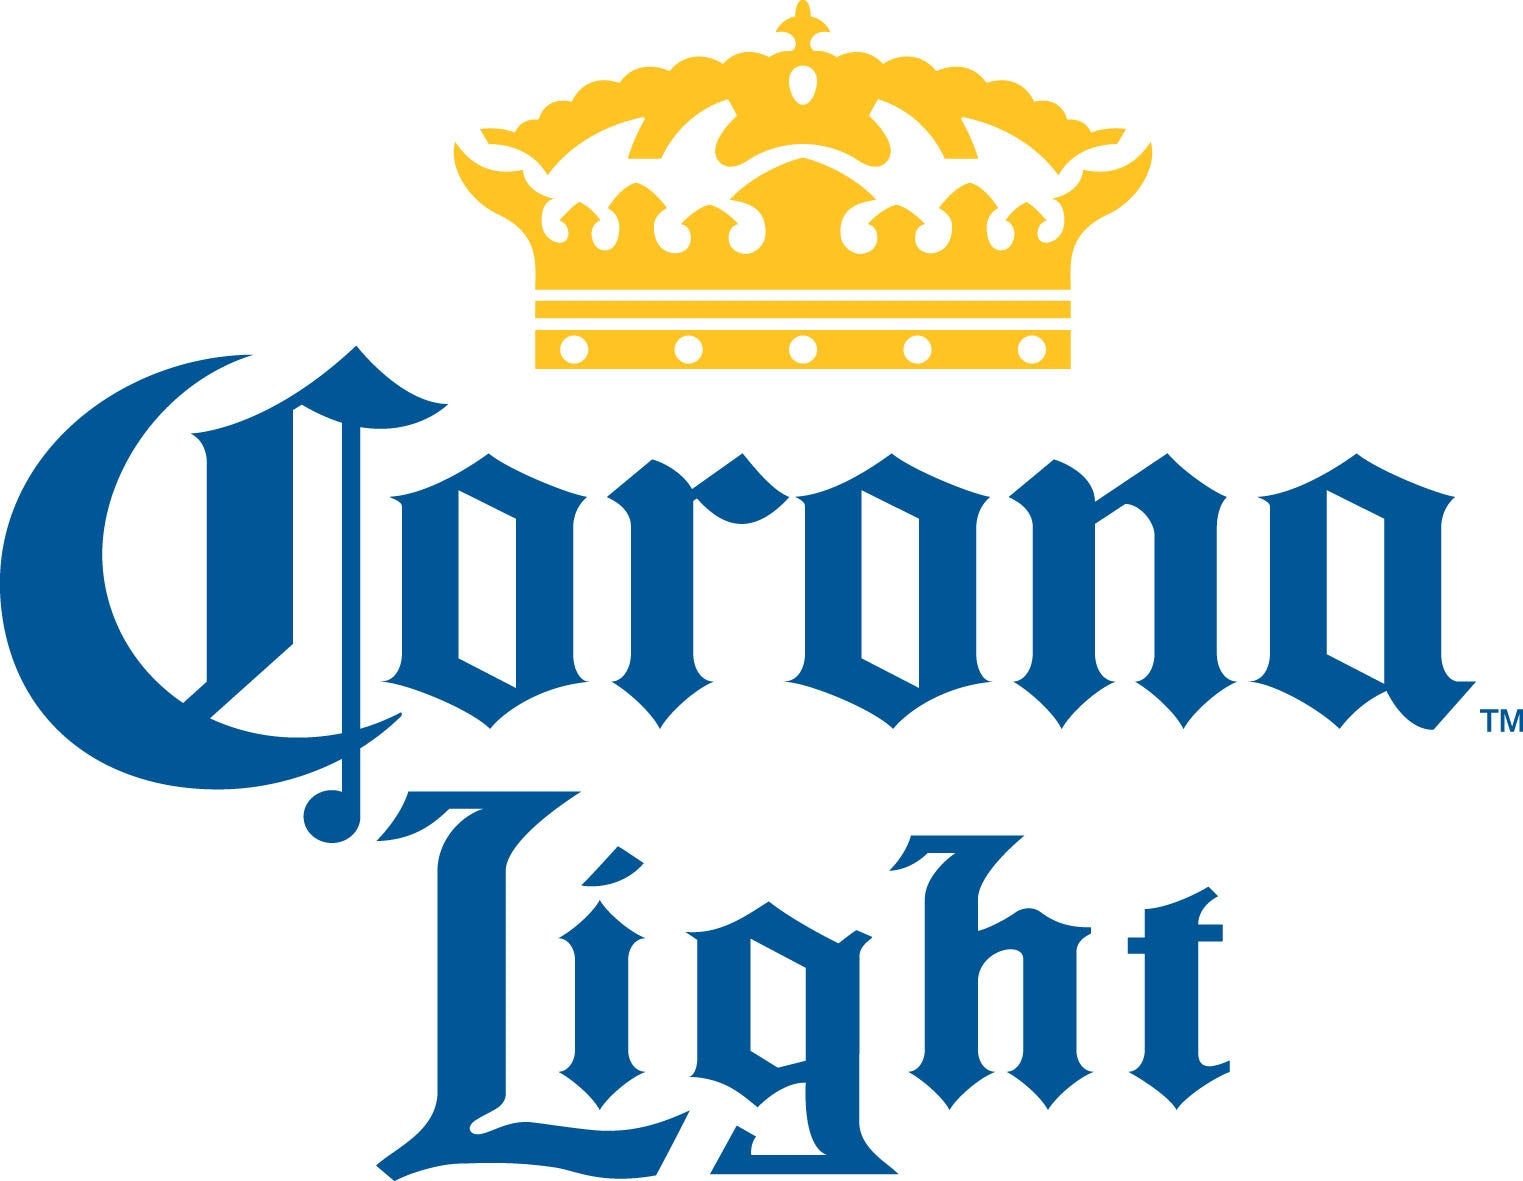 Corona Light 6 Pk Bottles